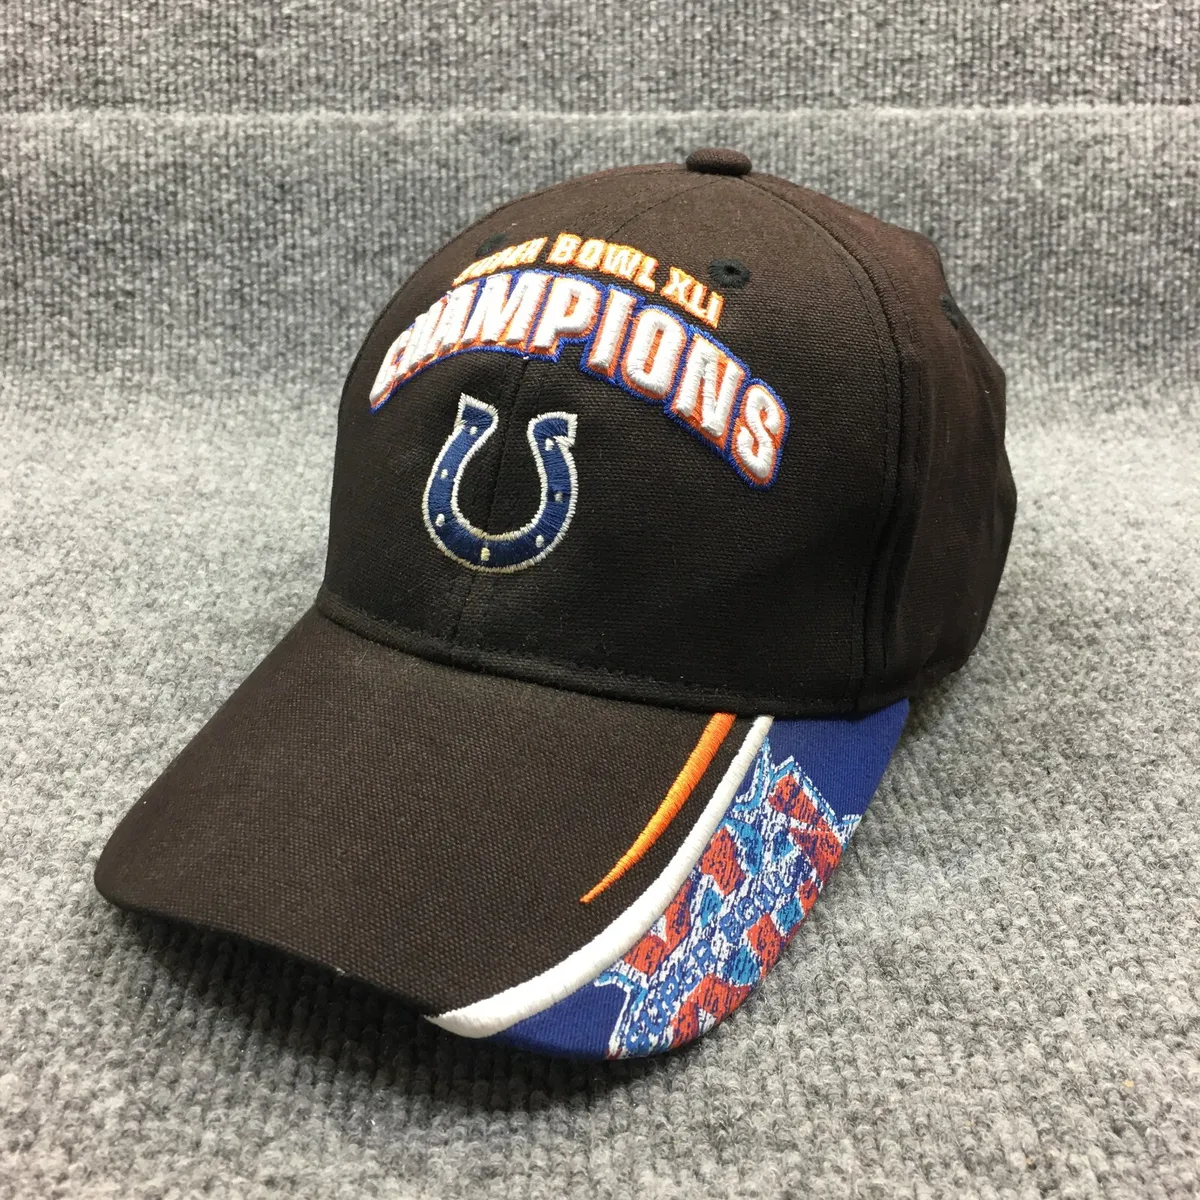 Indianapolis Colts Hat Cap Strap Back Men NFL Football Black Super Bowl XLI  A61